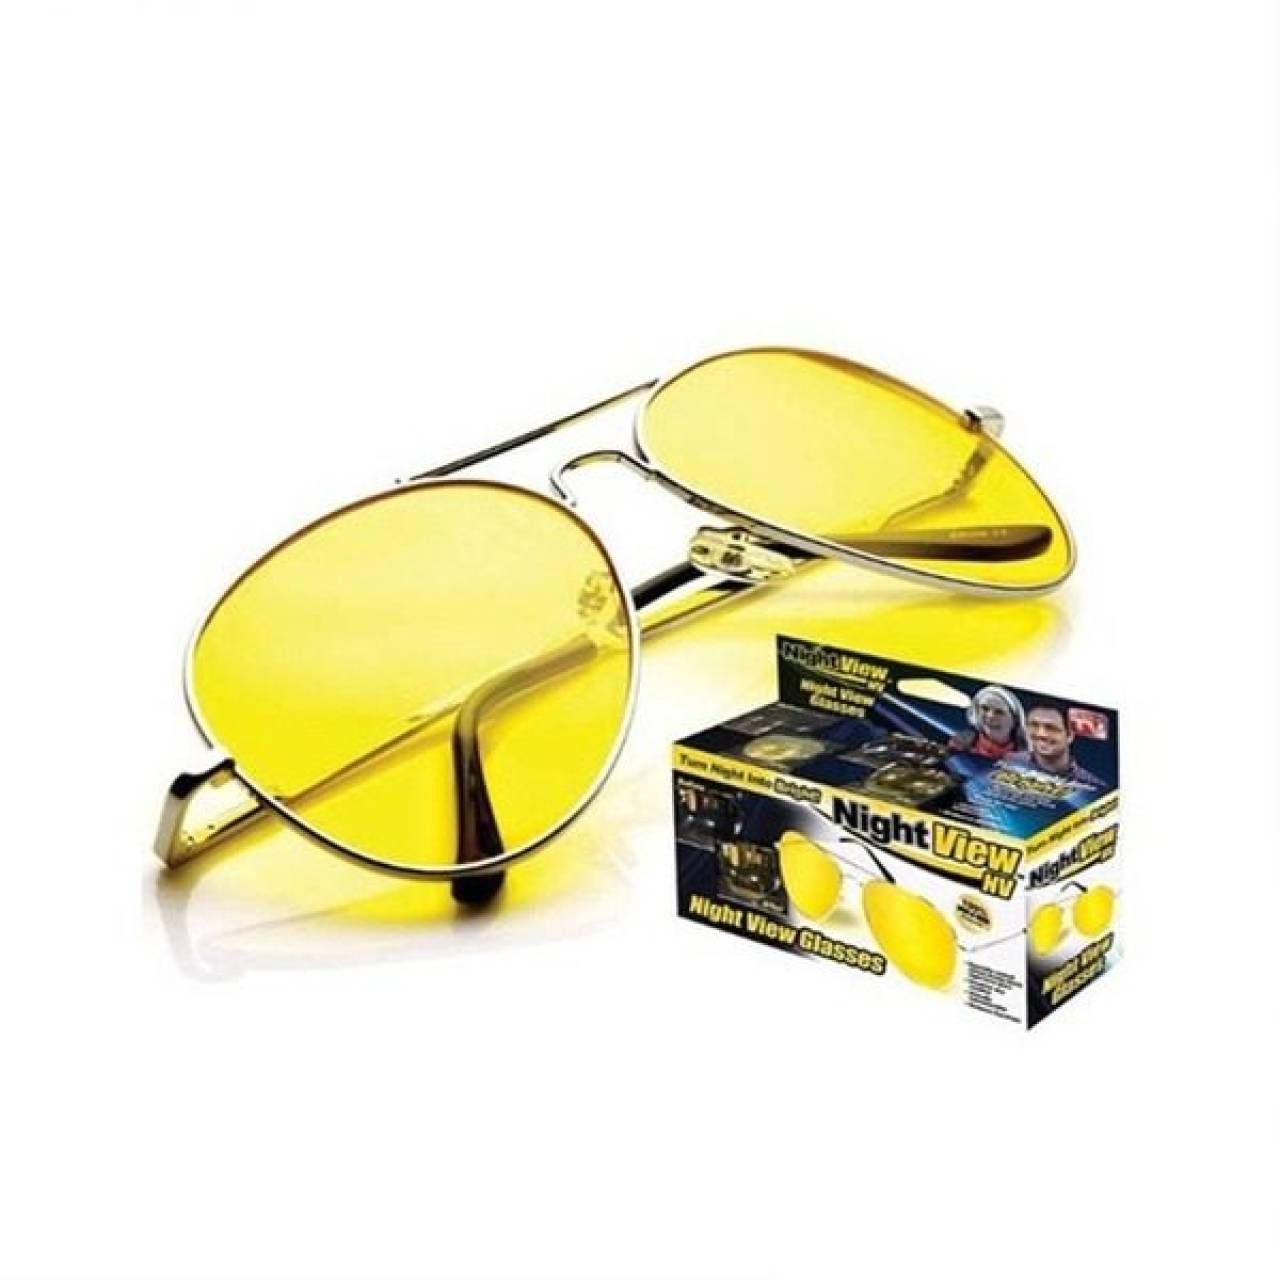 Ochelari de condus Night View Glasses cu protectie UV